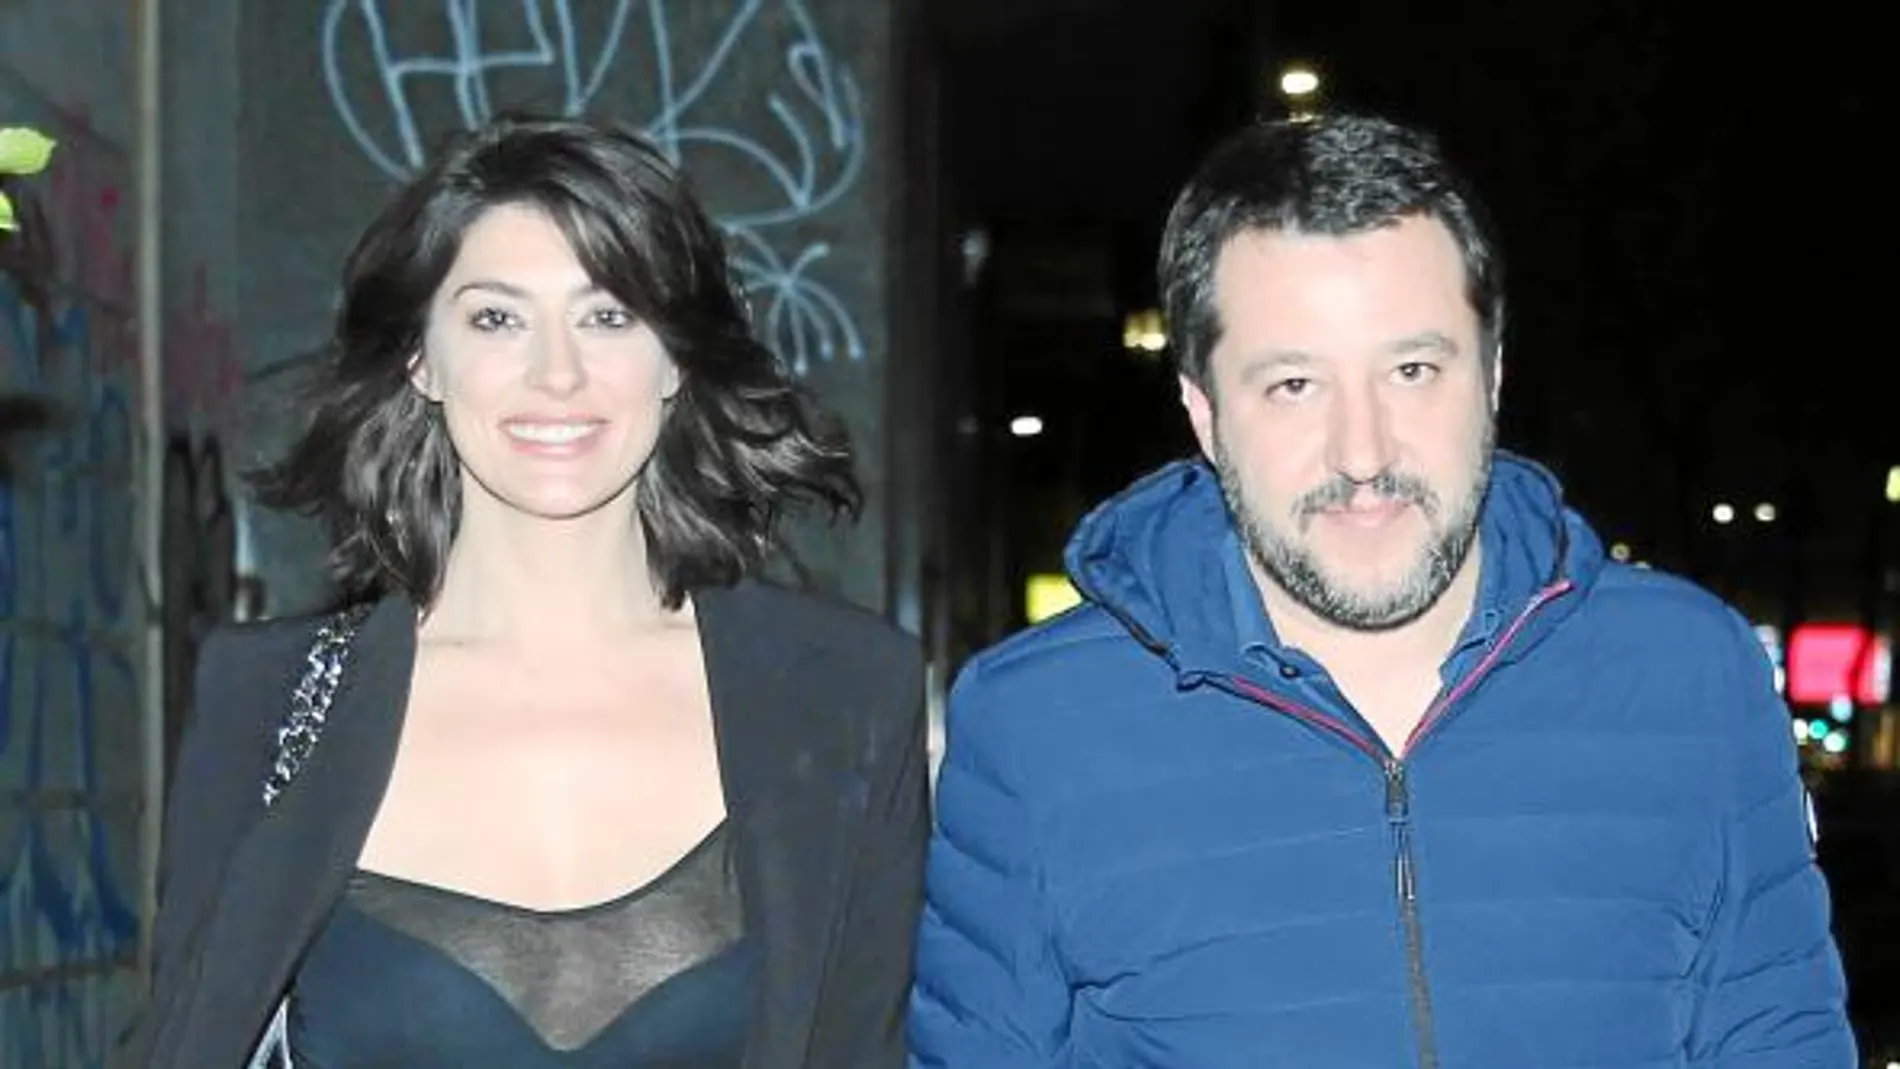 Elisa Isoardi y Matteo Salvini mantienen una relación desde hace cuatro años / Gtres